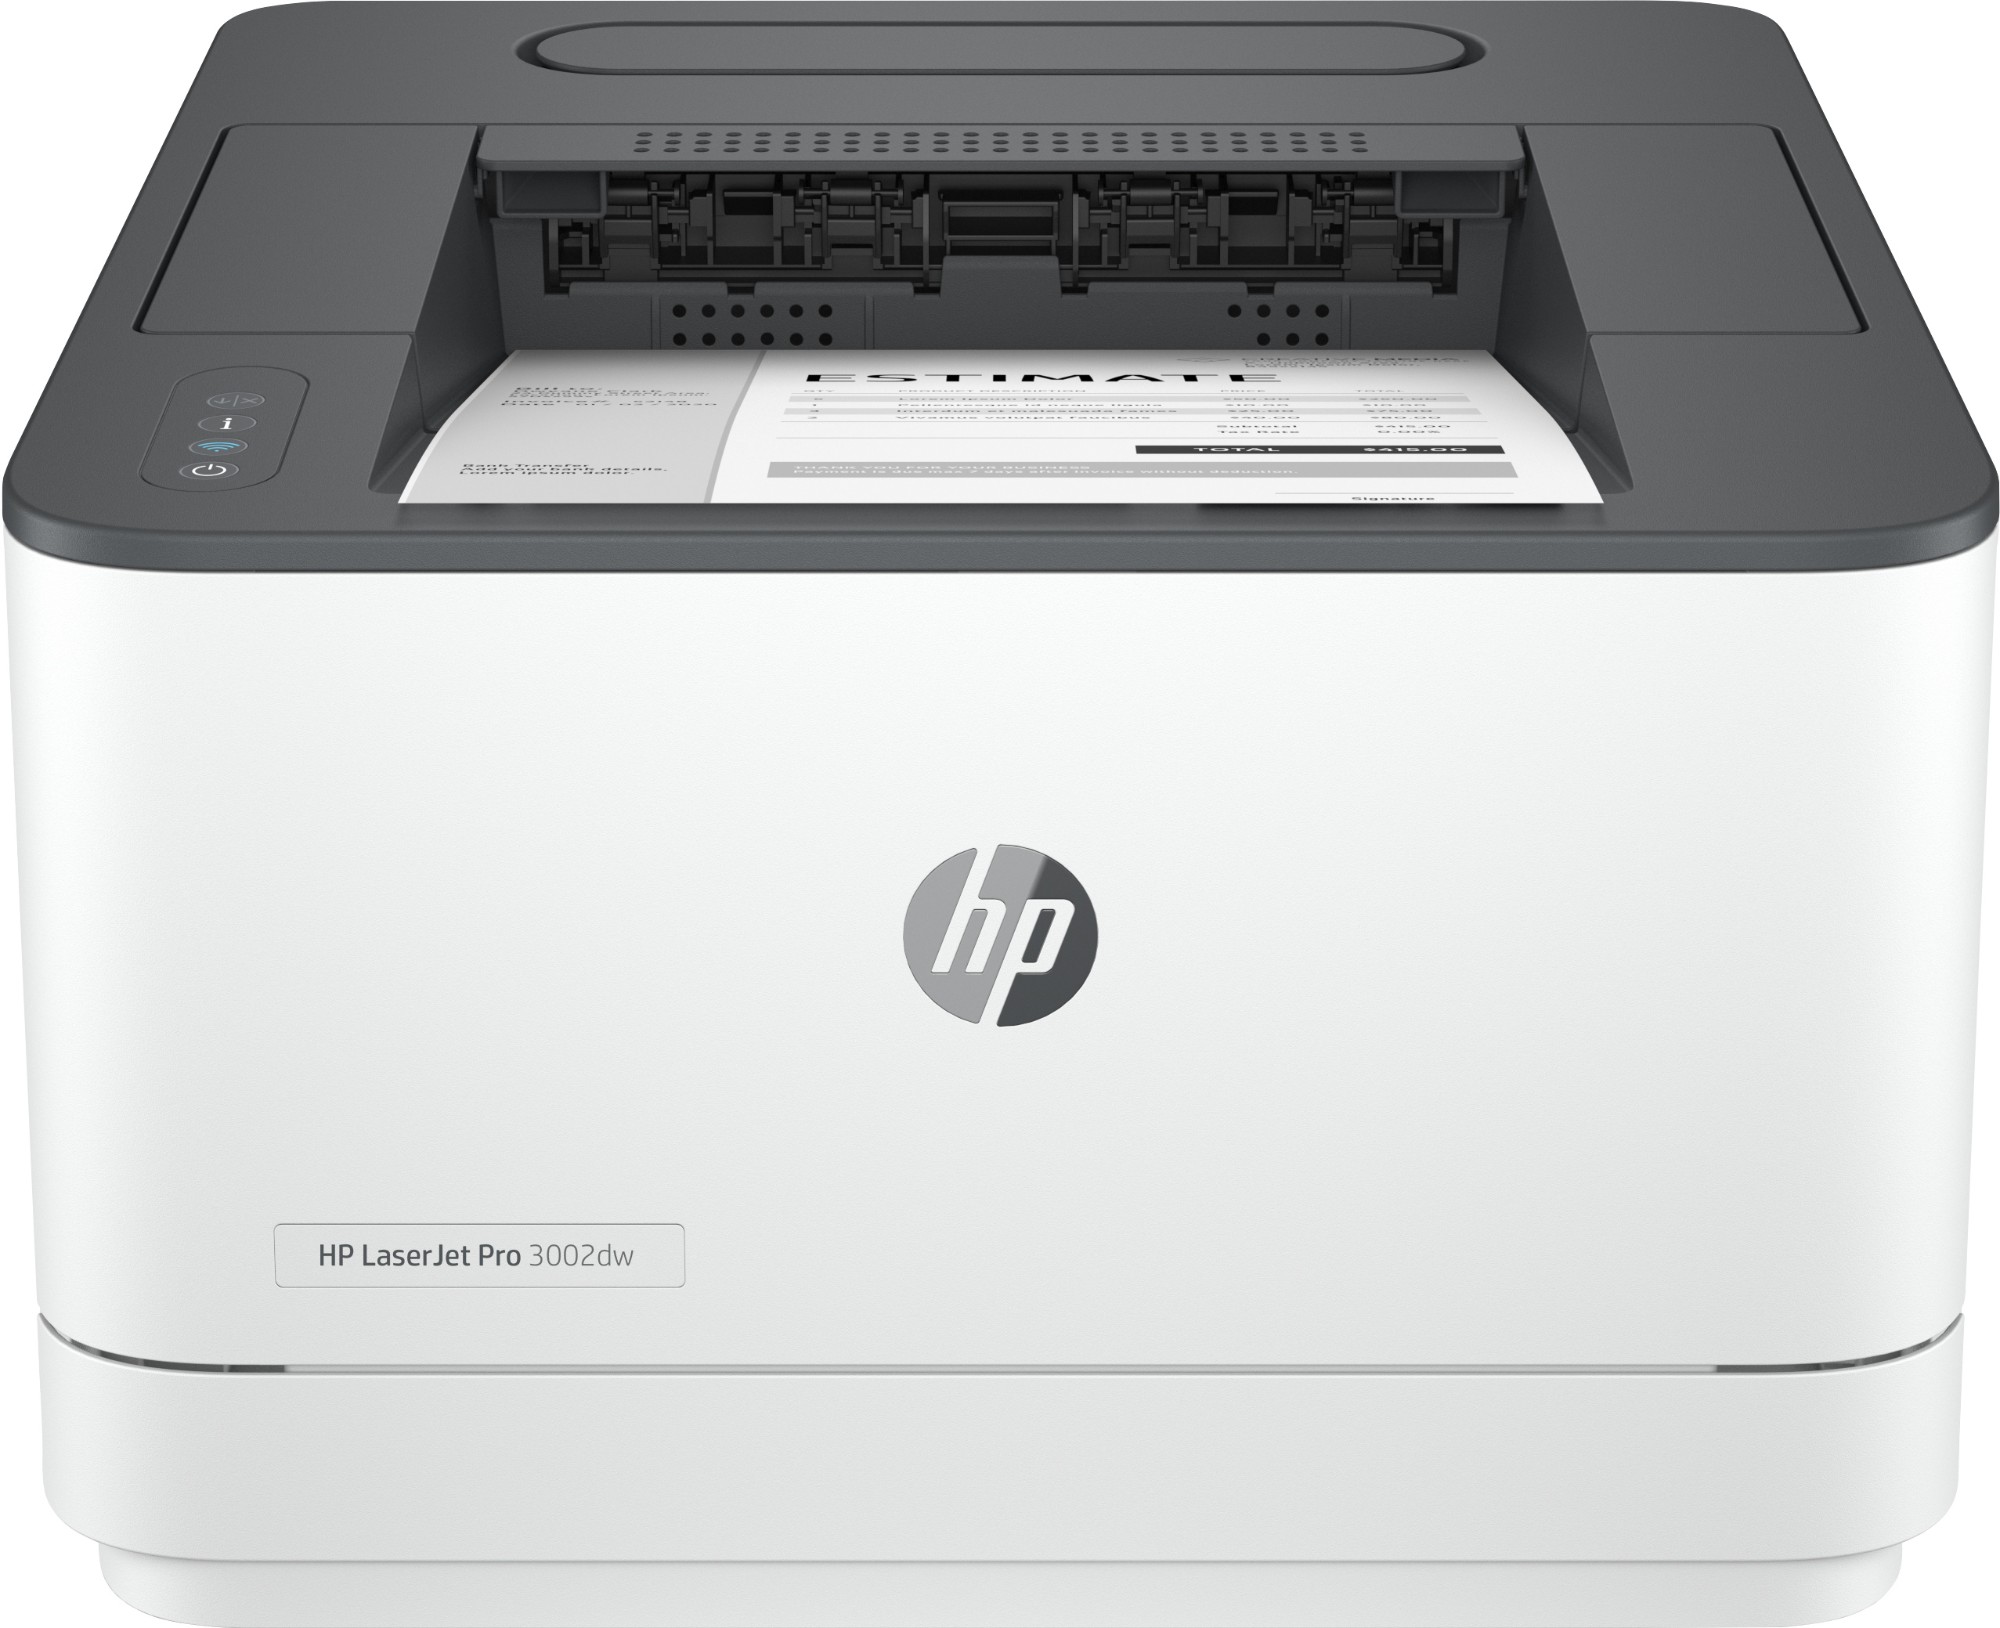 HP LaserJet Pro 3002dw Printer, Black and white, Printer for Small med